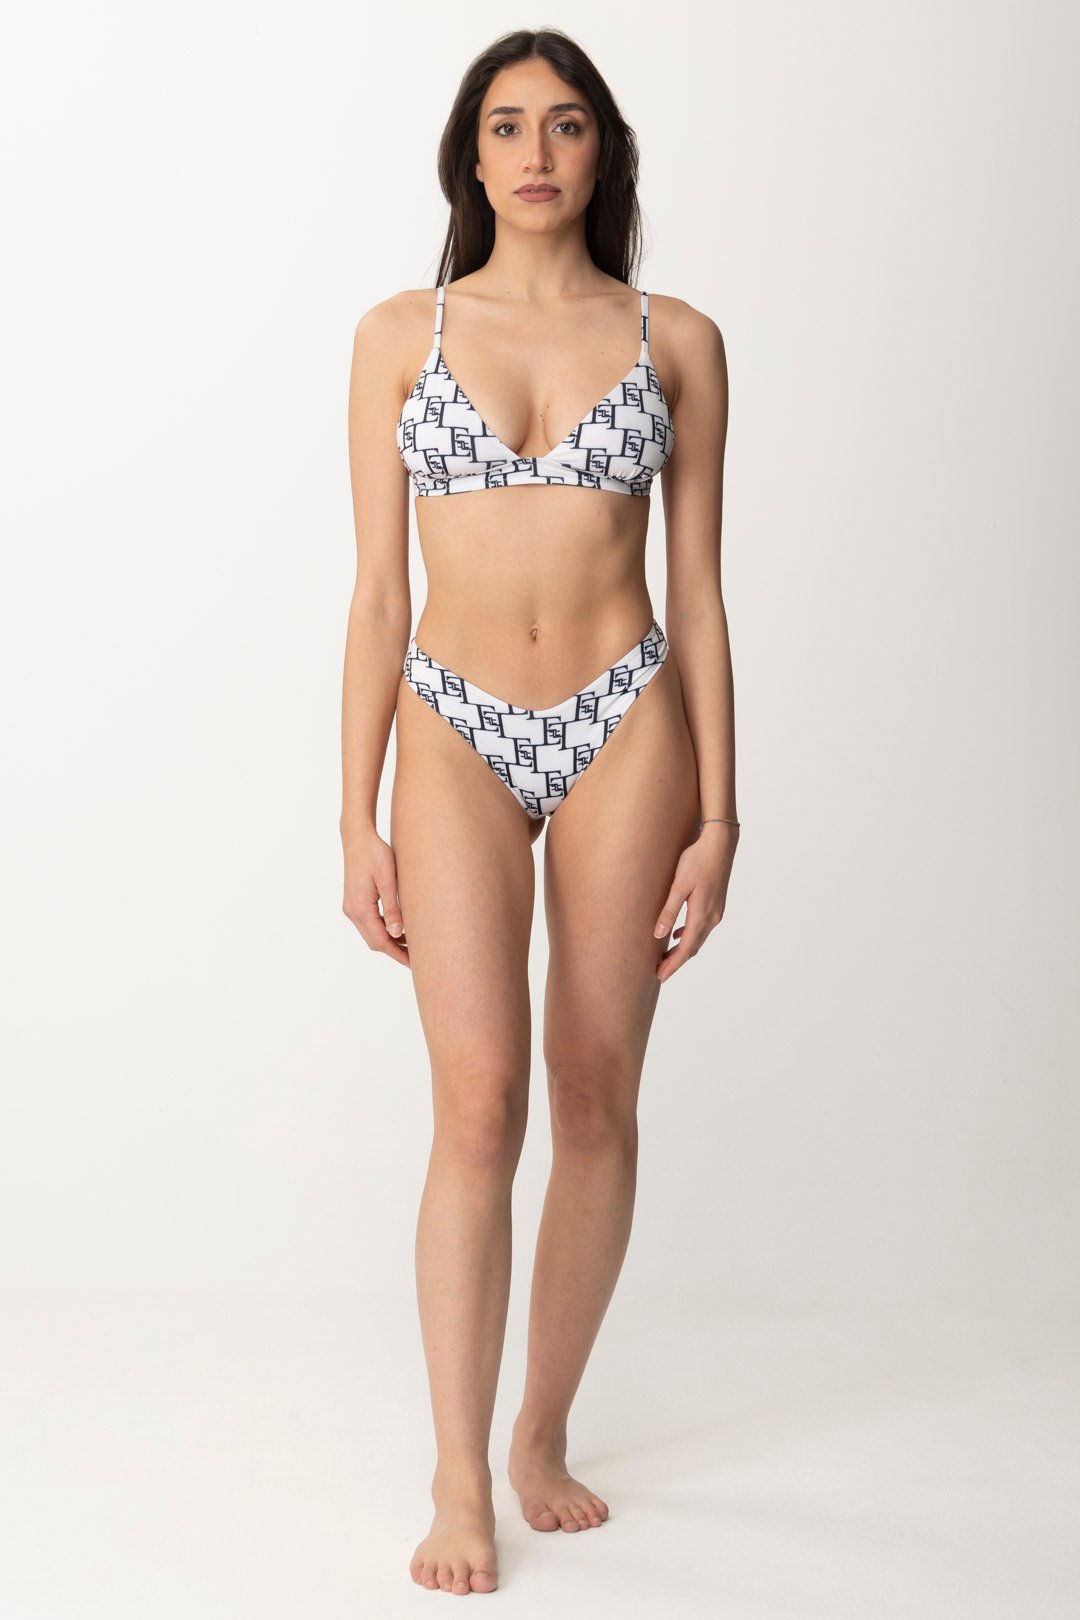 Podgląd: Elisabetta Franchi Bikini z nadrukiem z logo Burro/Nero